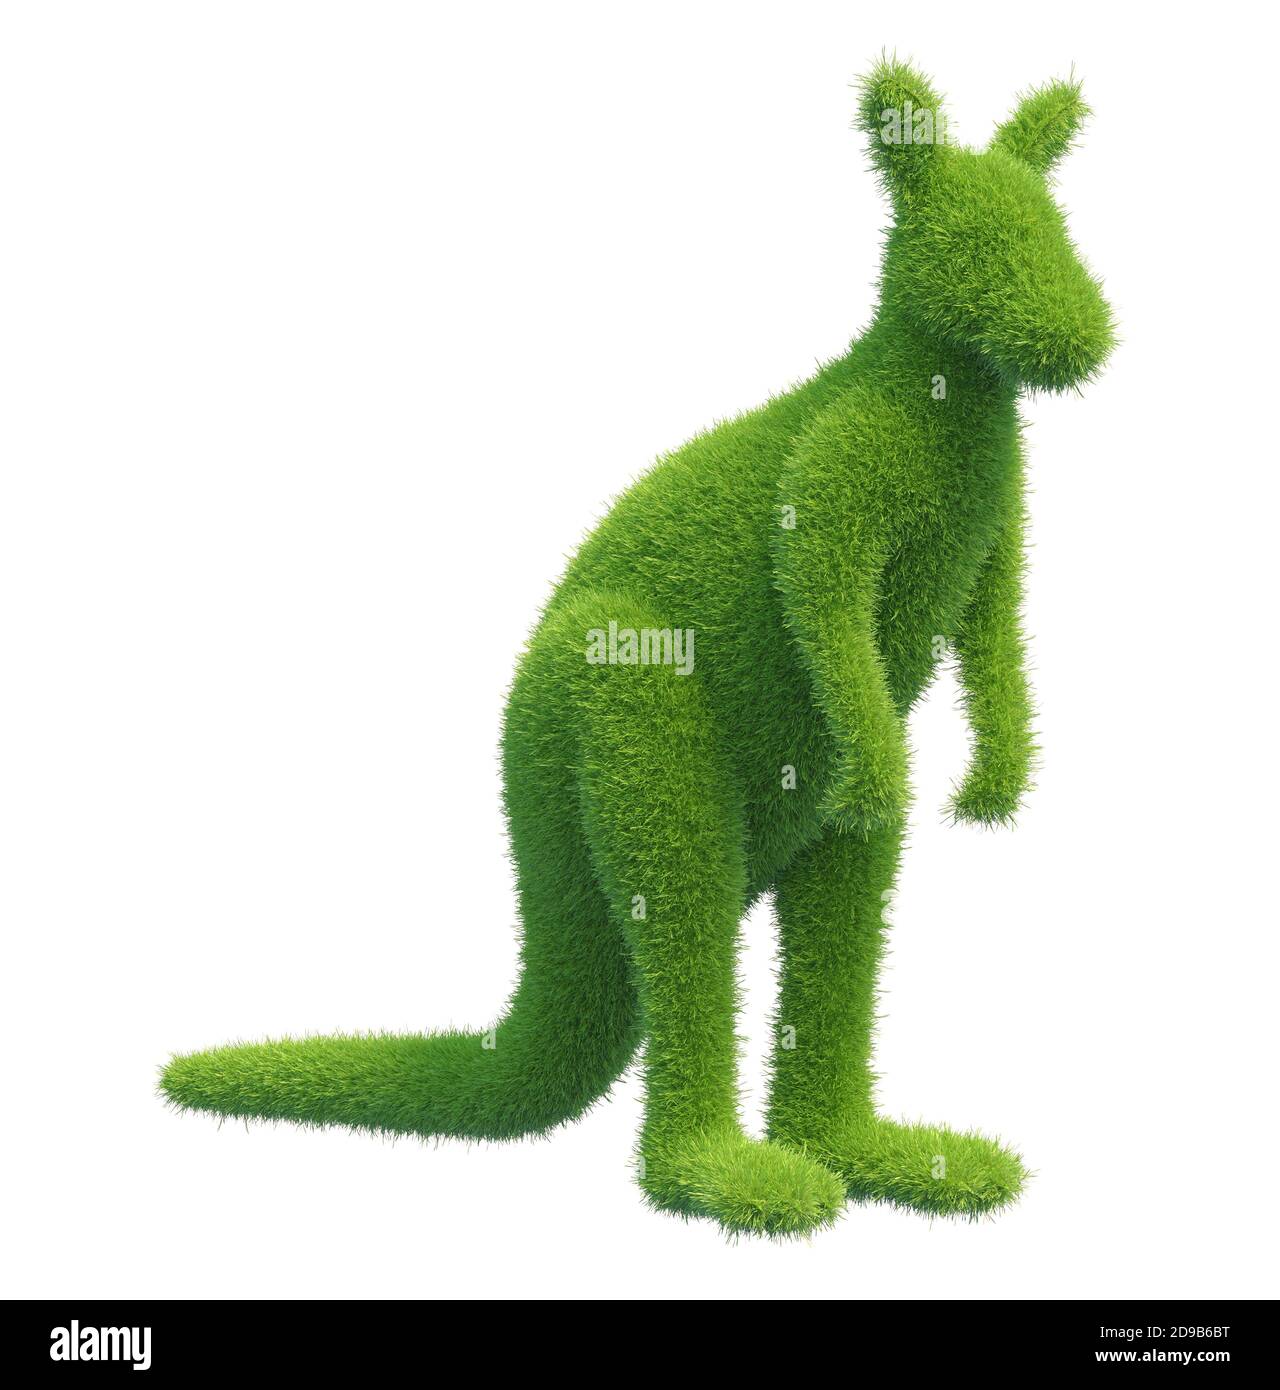 Kangourou sous forme d'herbe verte fraîche. rendu 3d Banque D'Images